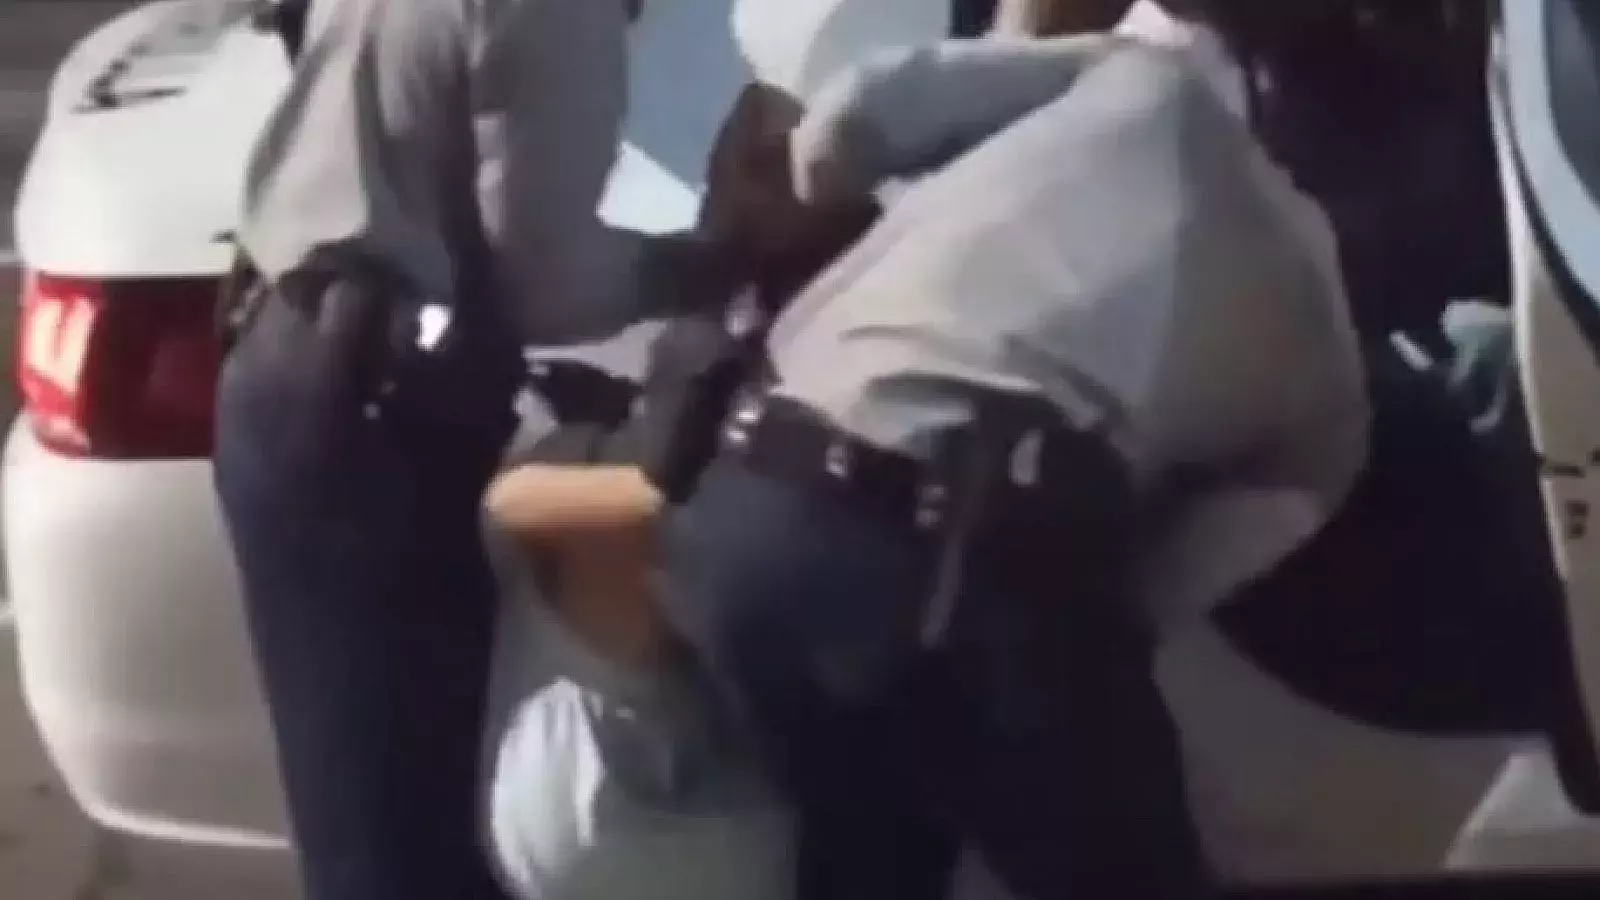 Violentyo arresto policial